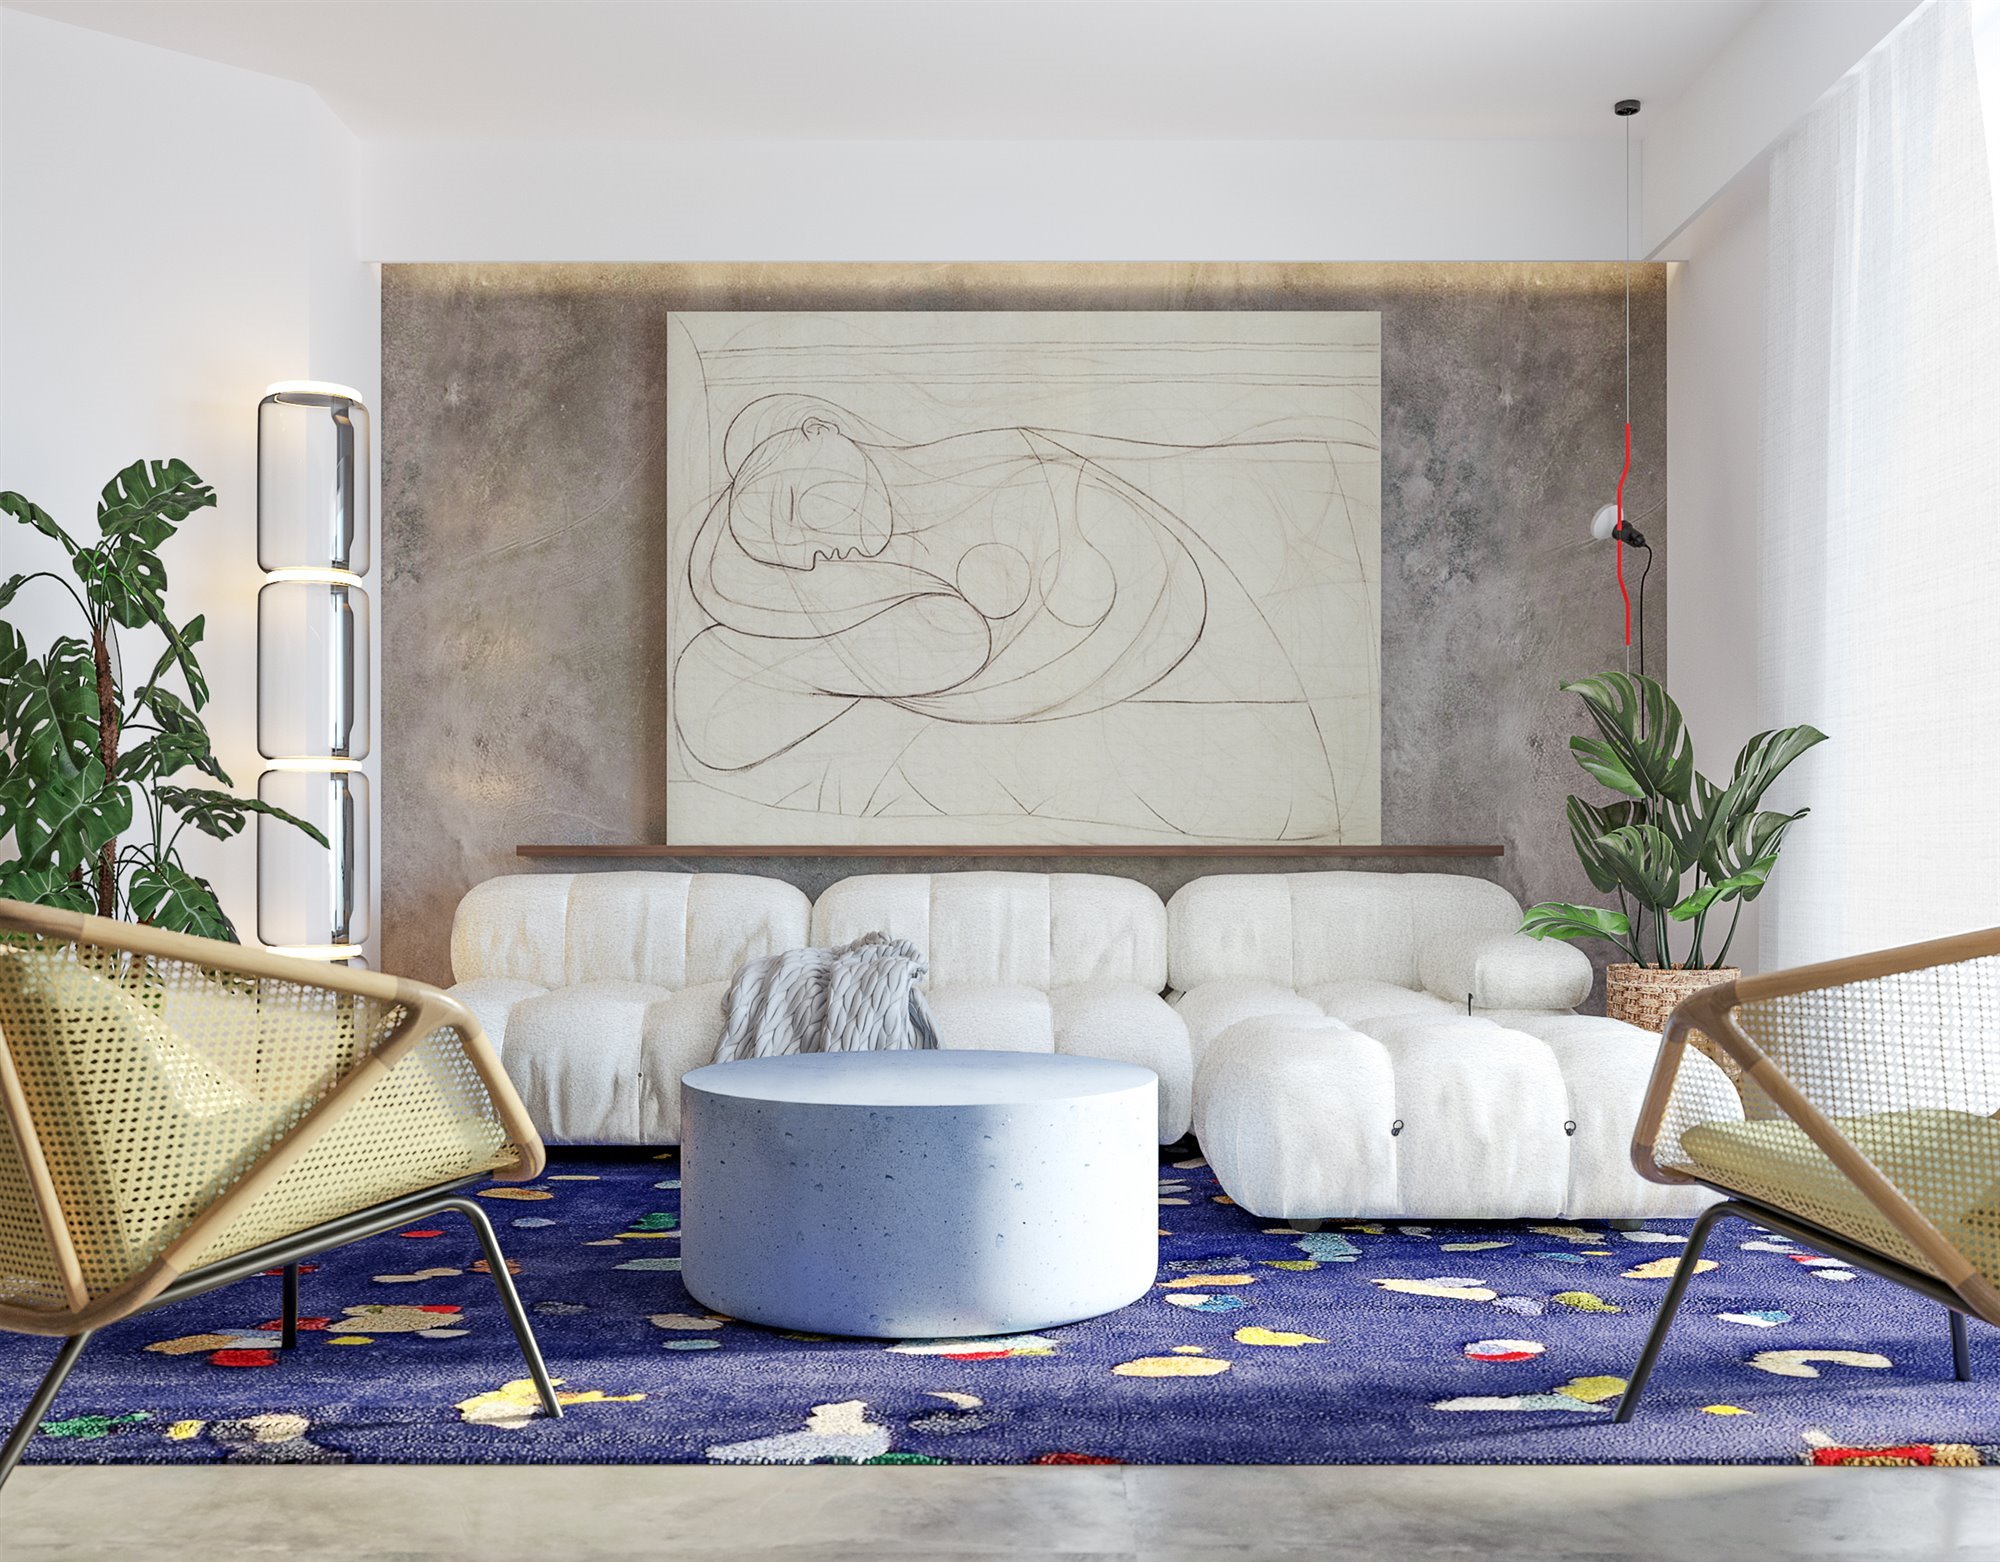 Piso en Roma con decoracion de interiores moderna salon con alfombra de color azul y butacas amarillas